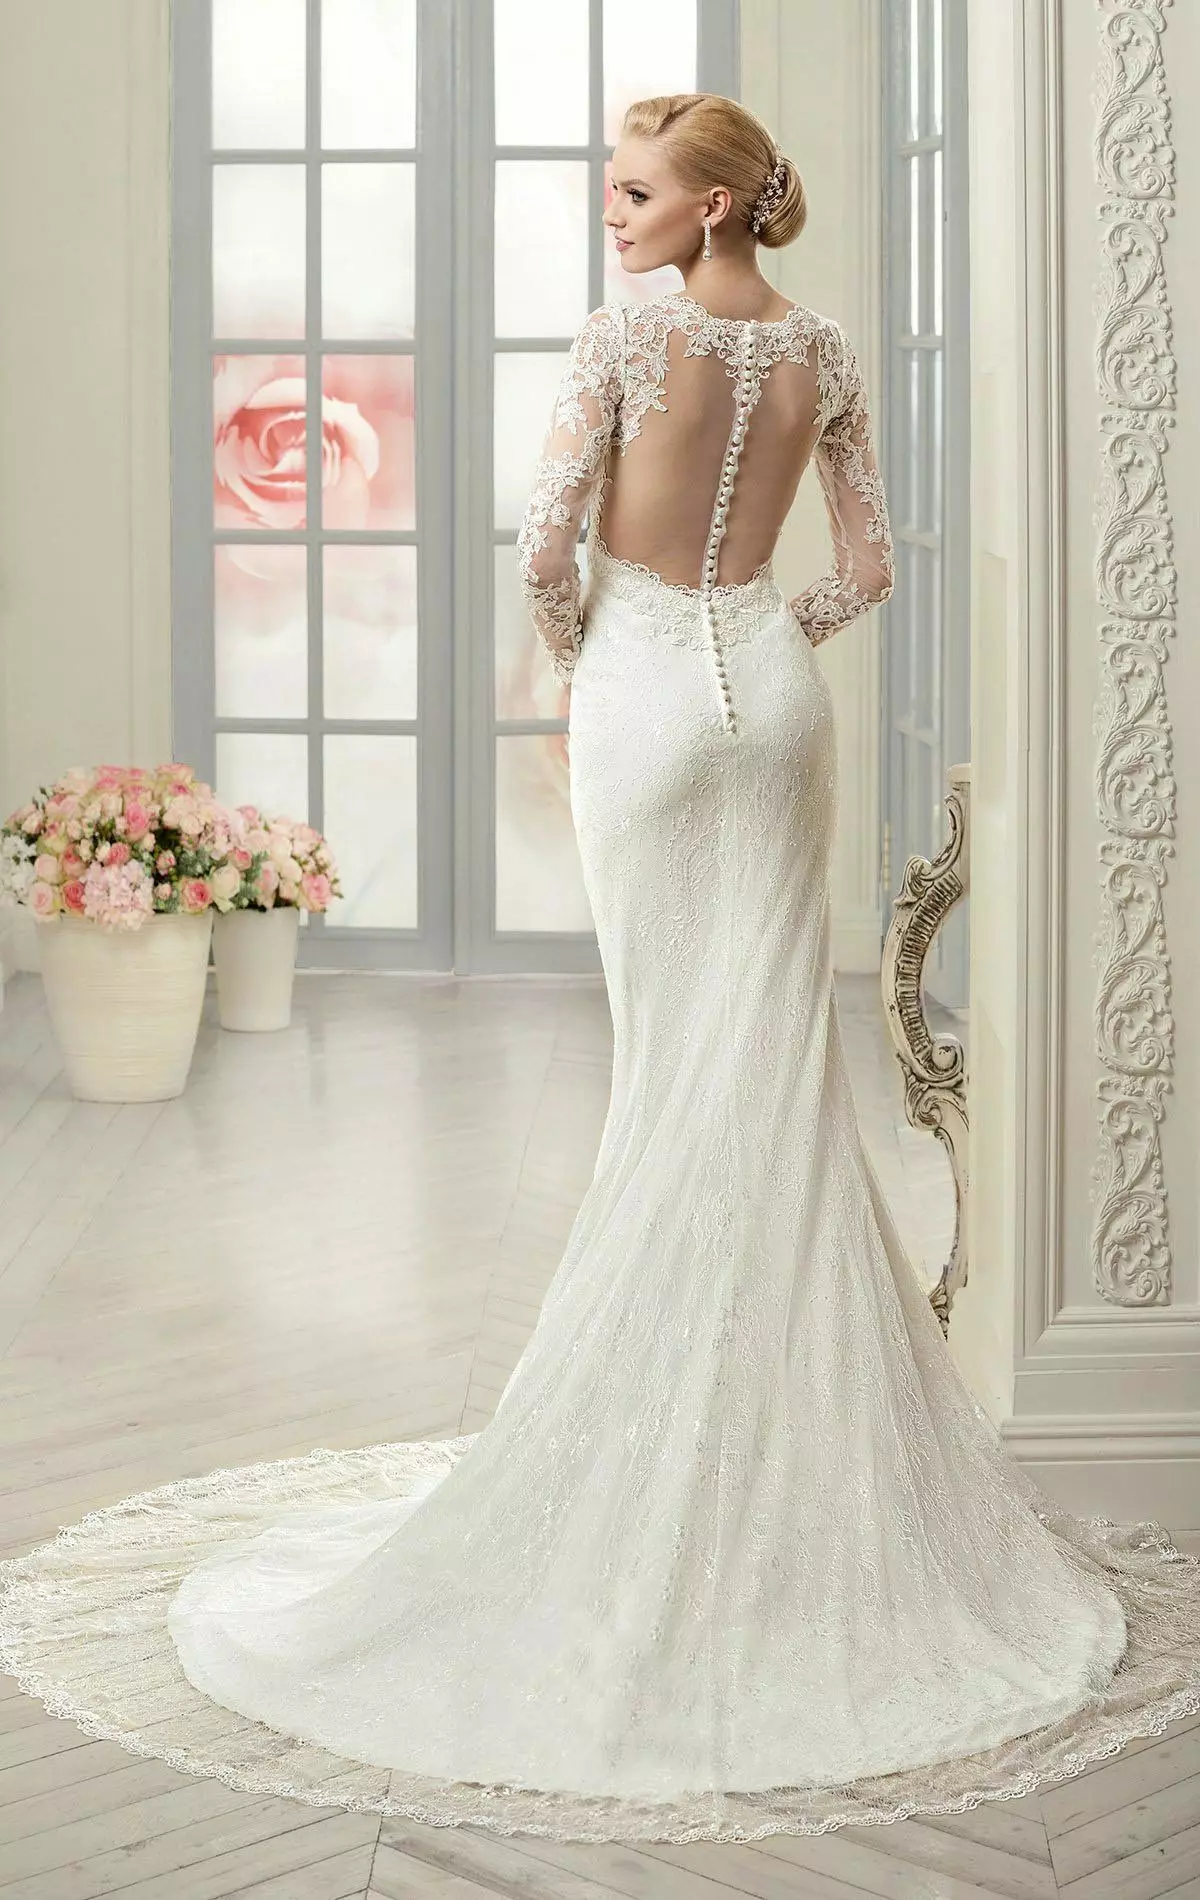 Vestido de noiva com ilusão de costas nuas